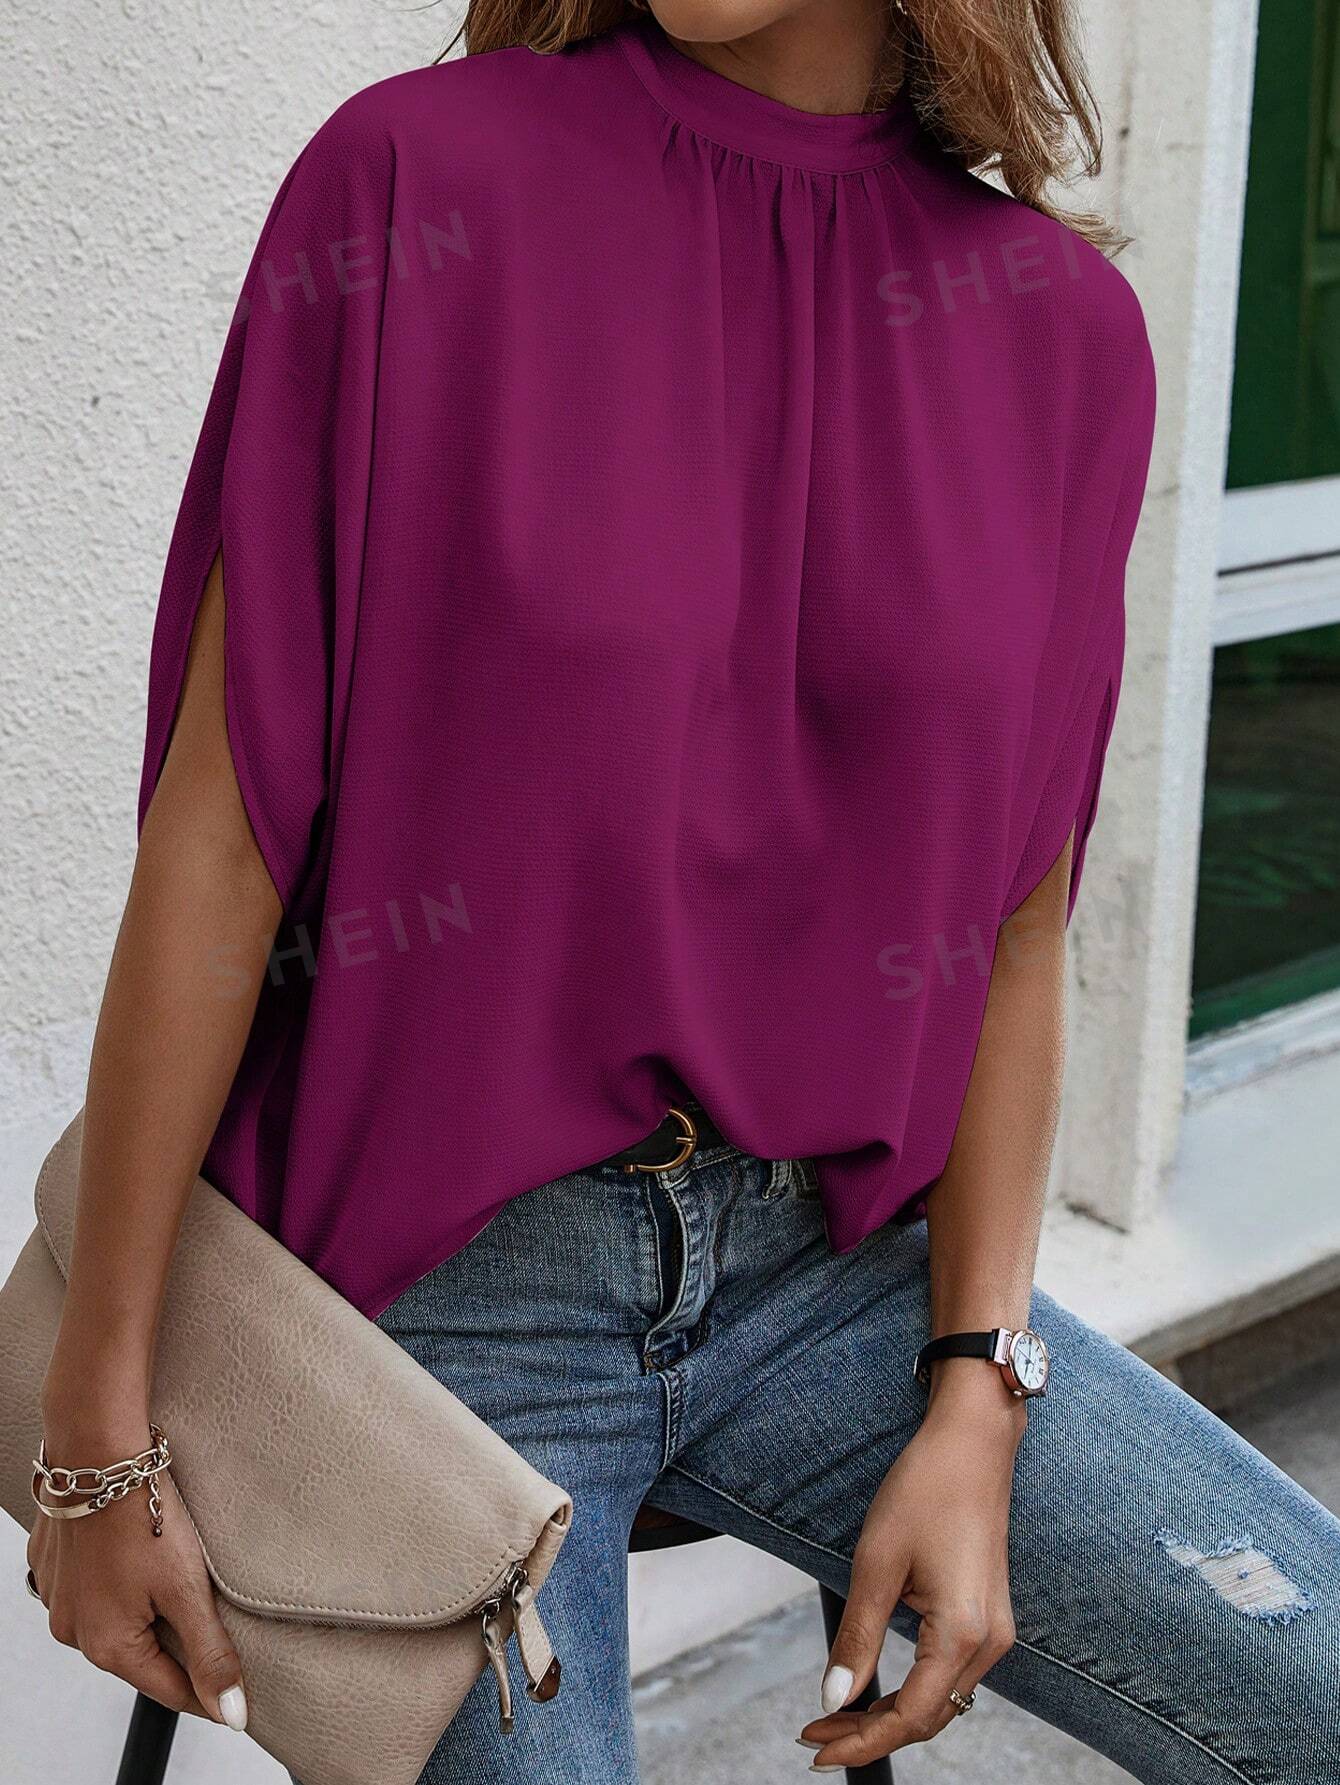 Женская однотонная рубашка с воротником-стойкой и половиной рукава, красный фиолетовый